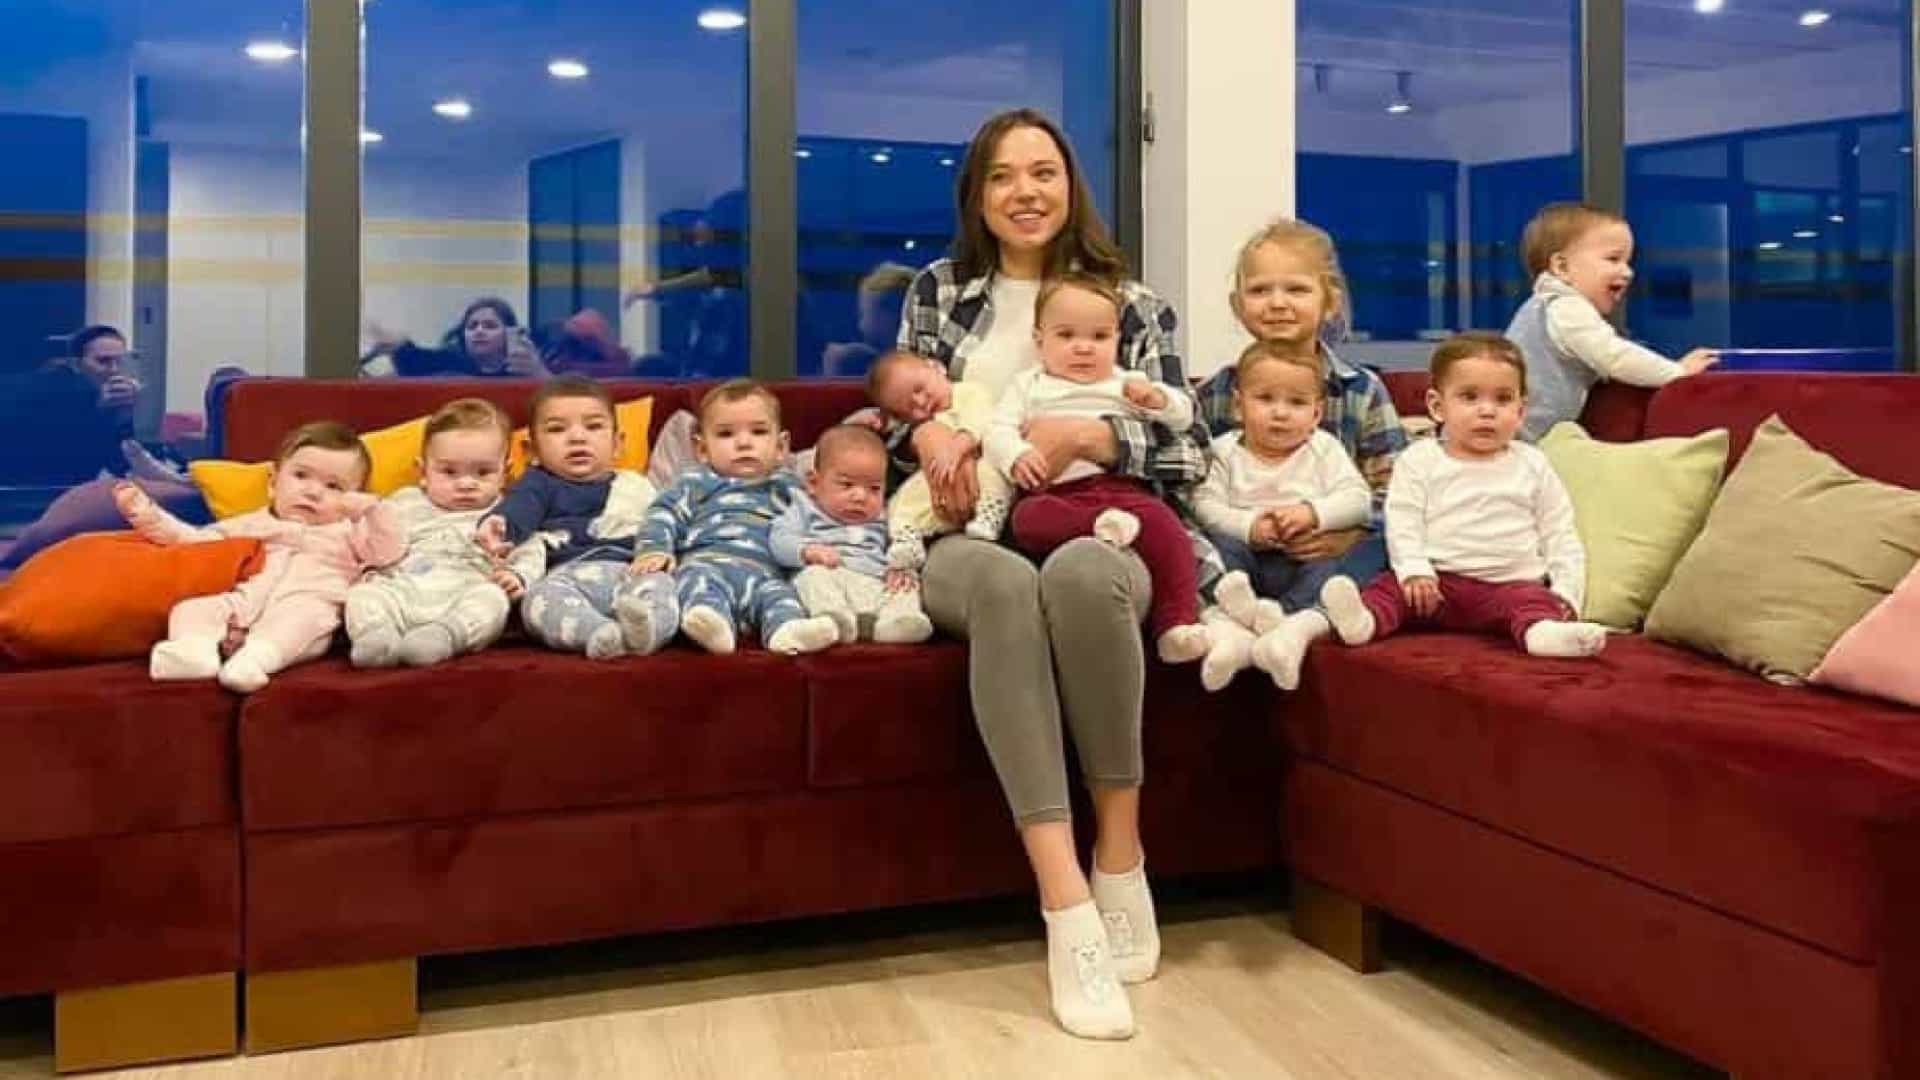 Jovem russa já tem onze filhos e planeia ter mais: “Não sei quantos serão”